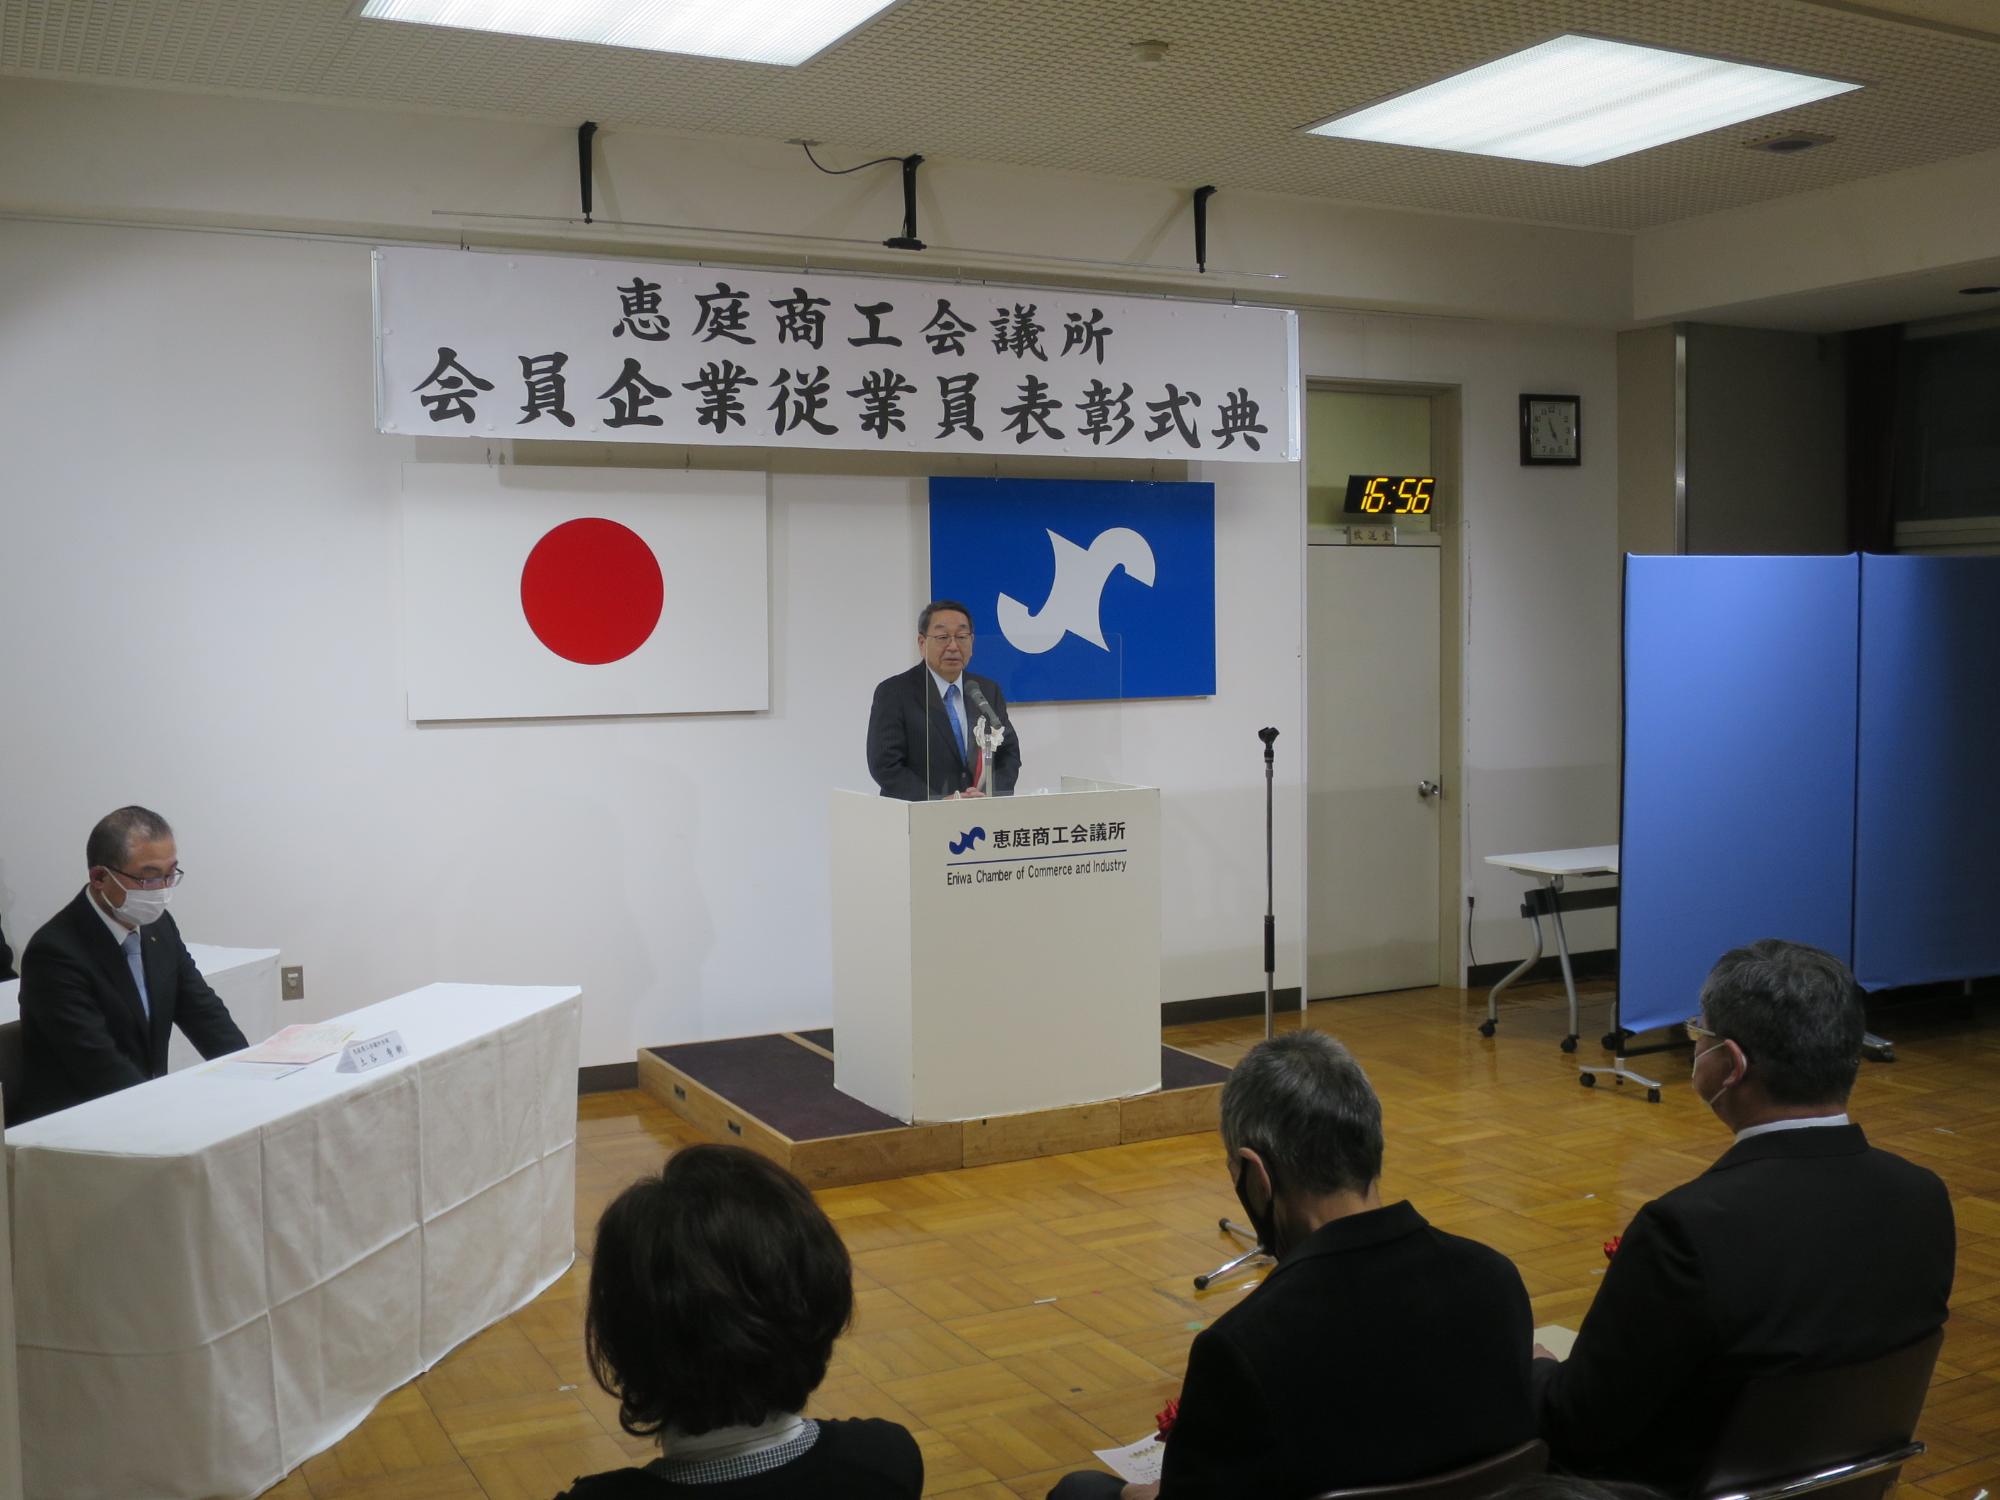 商工会議所従業員表彰式で挨拶する原田市長